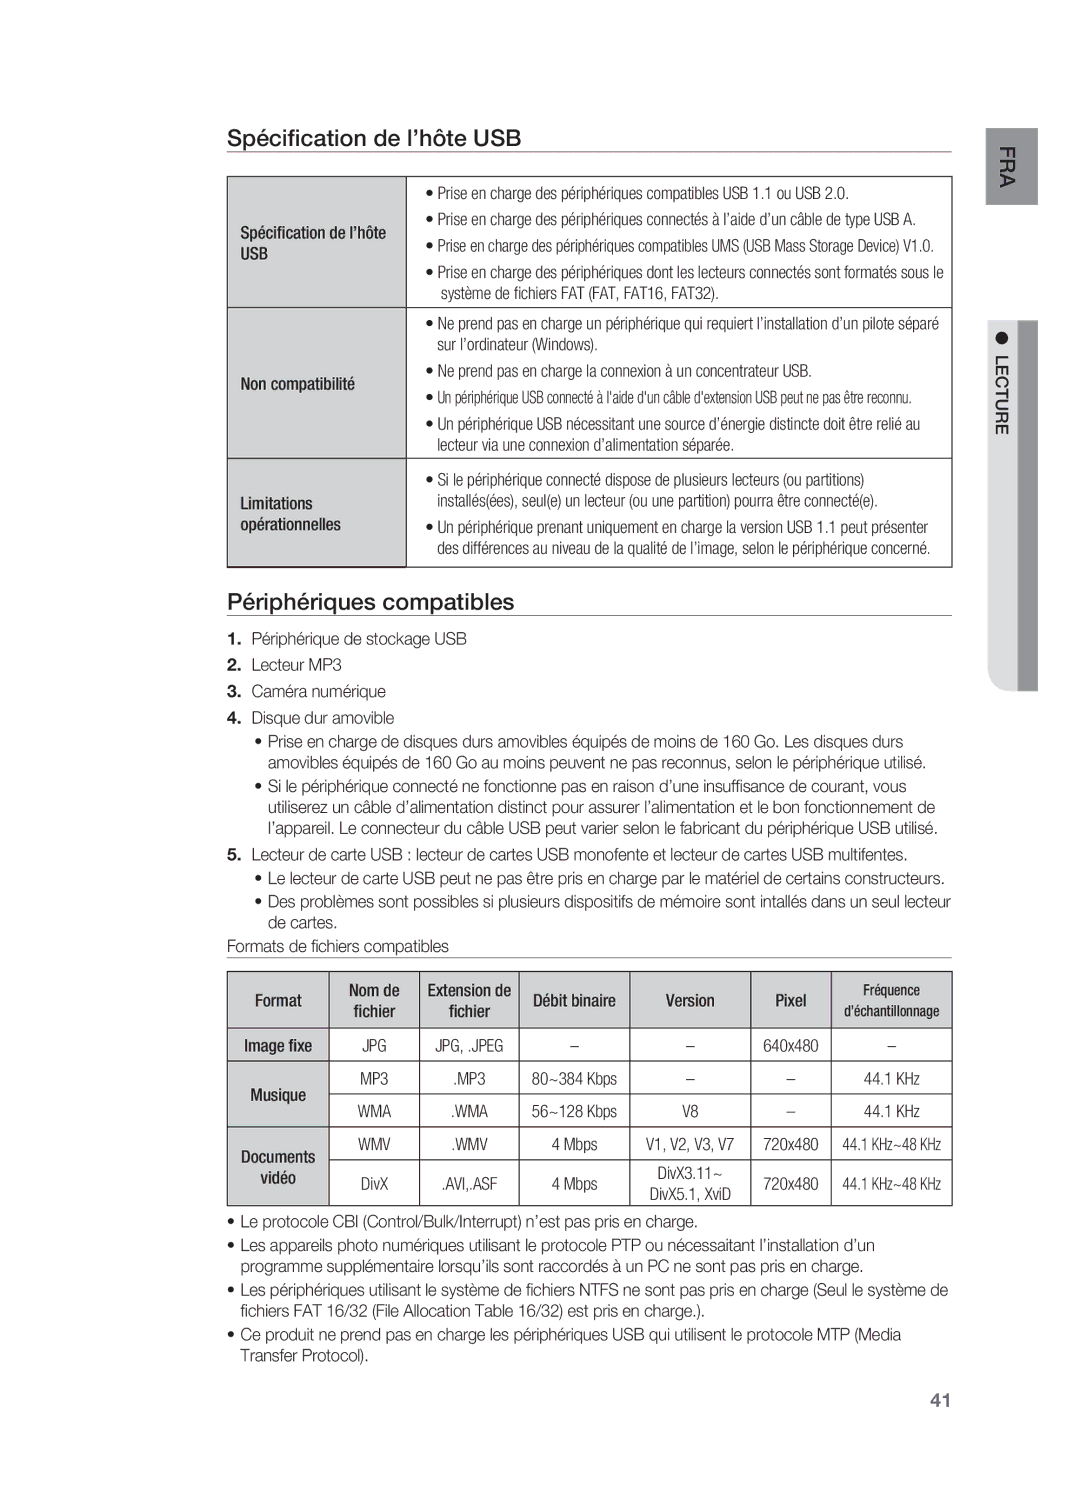 Samsung HT-X622T/XEF manual Spécification de l’hôte USB, Périphériques compatibles, Usb 